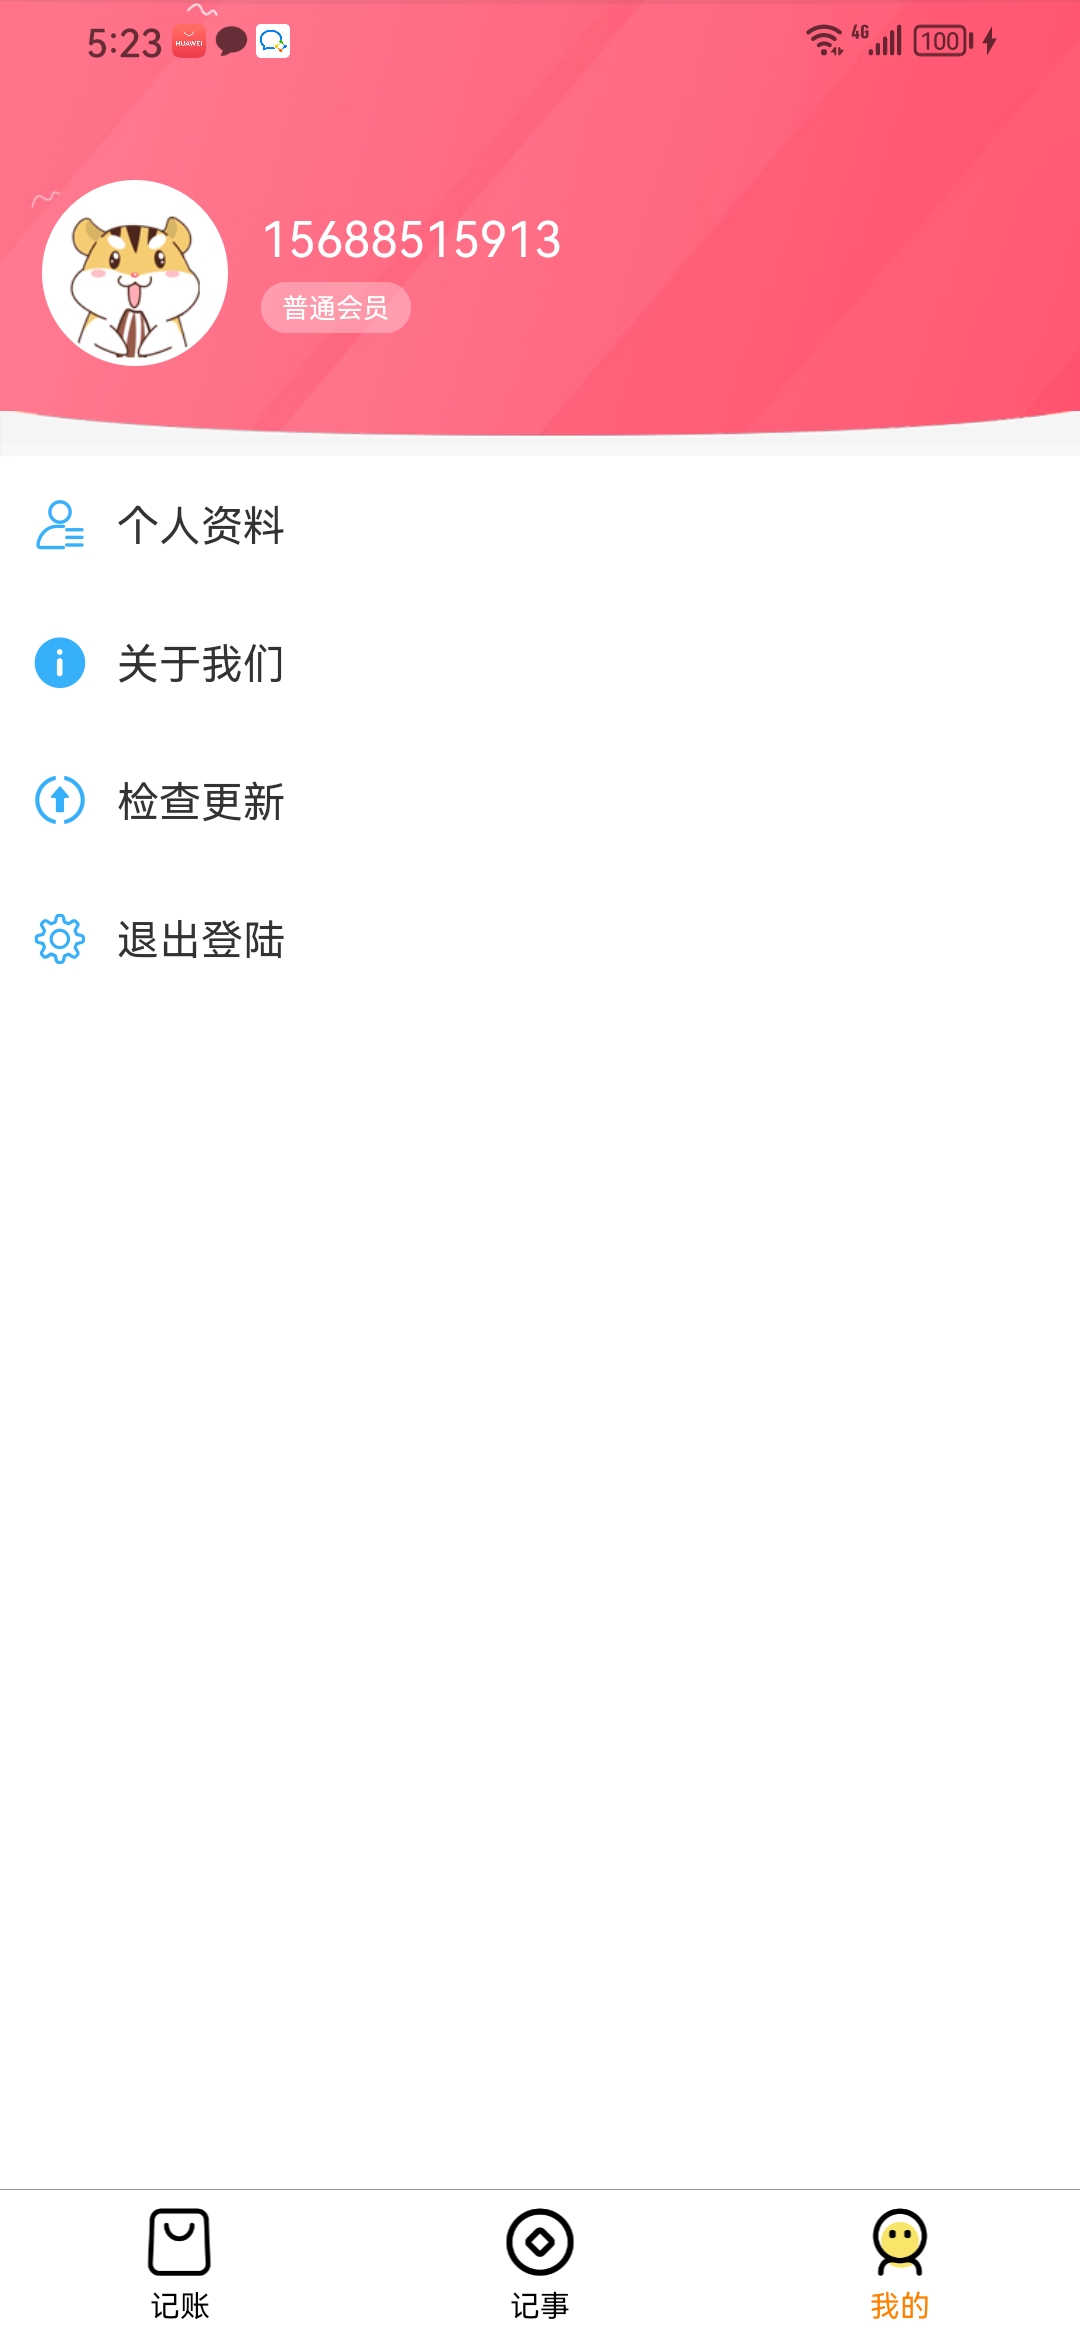 果沐记账app下载,果沐记账app官方版 v1.0.0